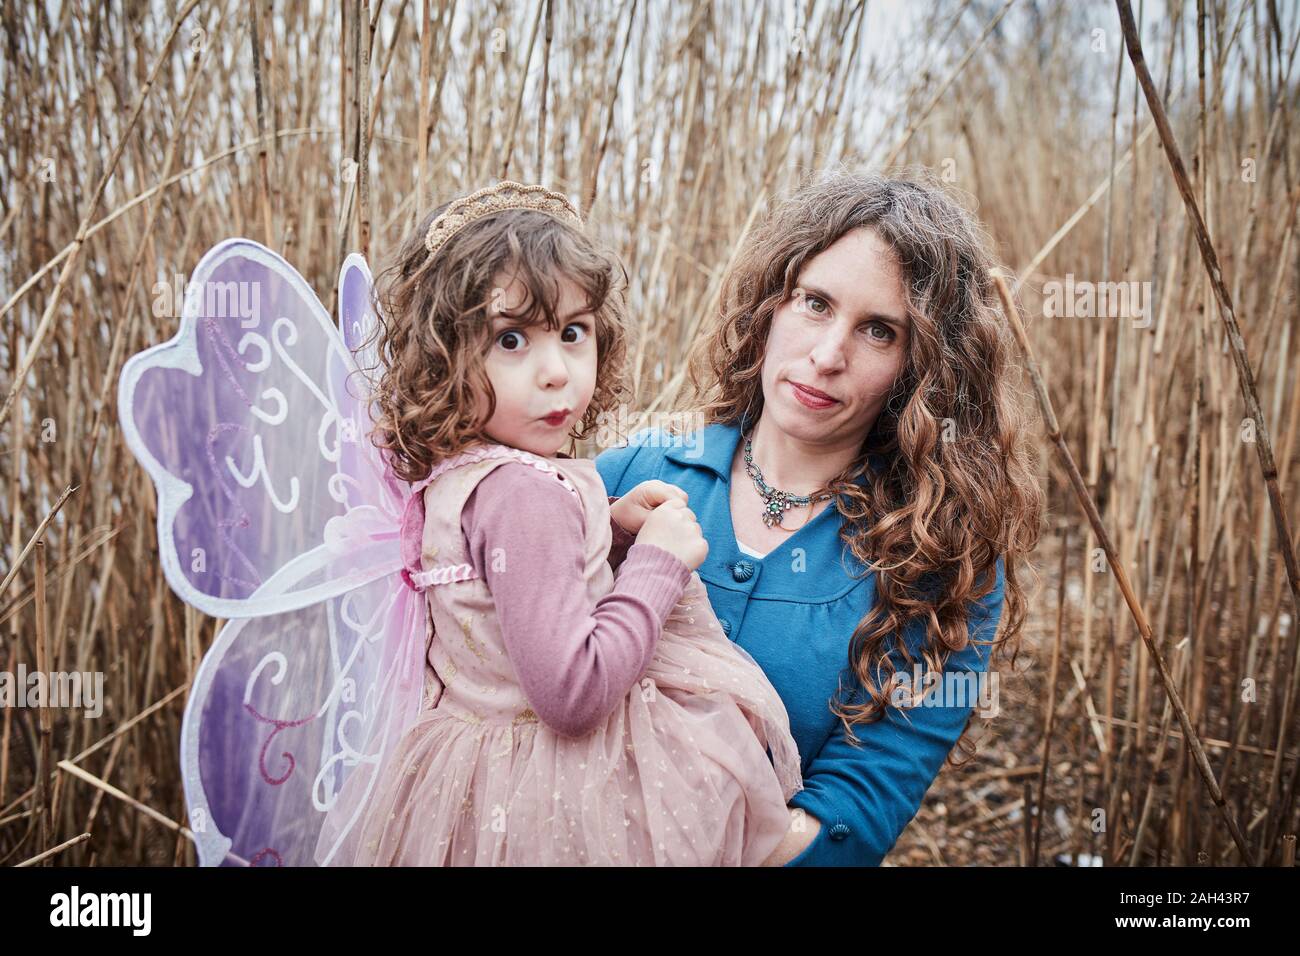 Ritratto di madre in natura con la sua bambina vestito come una farfalla tirando funny faces Foto Stock